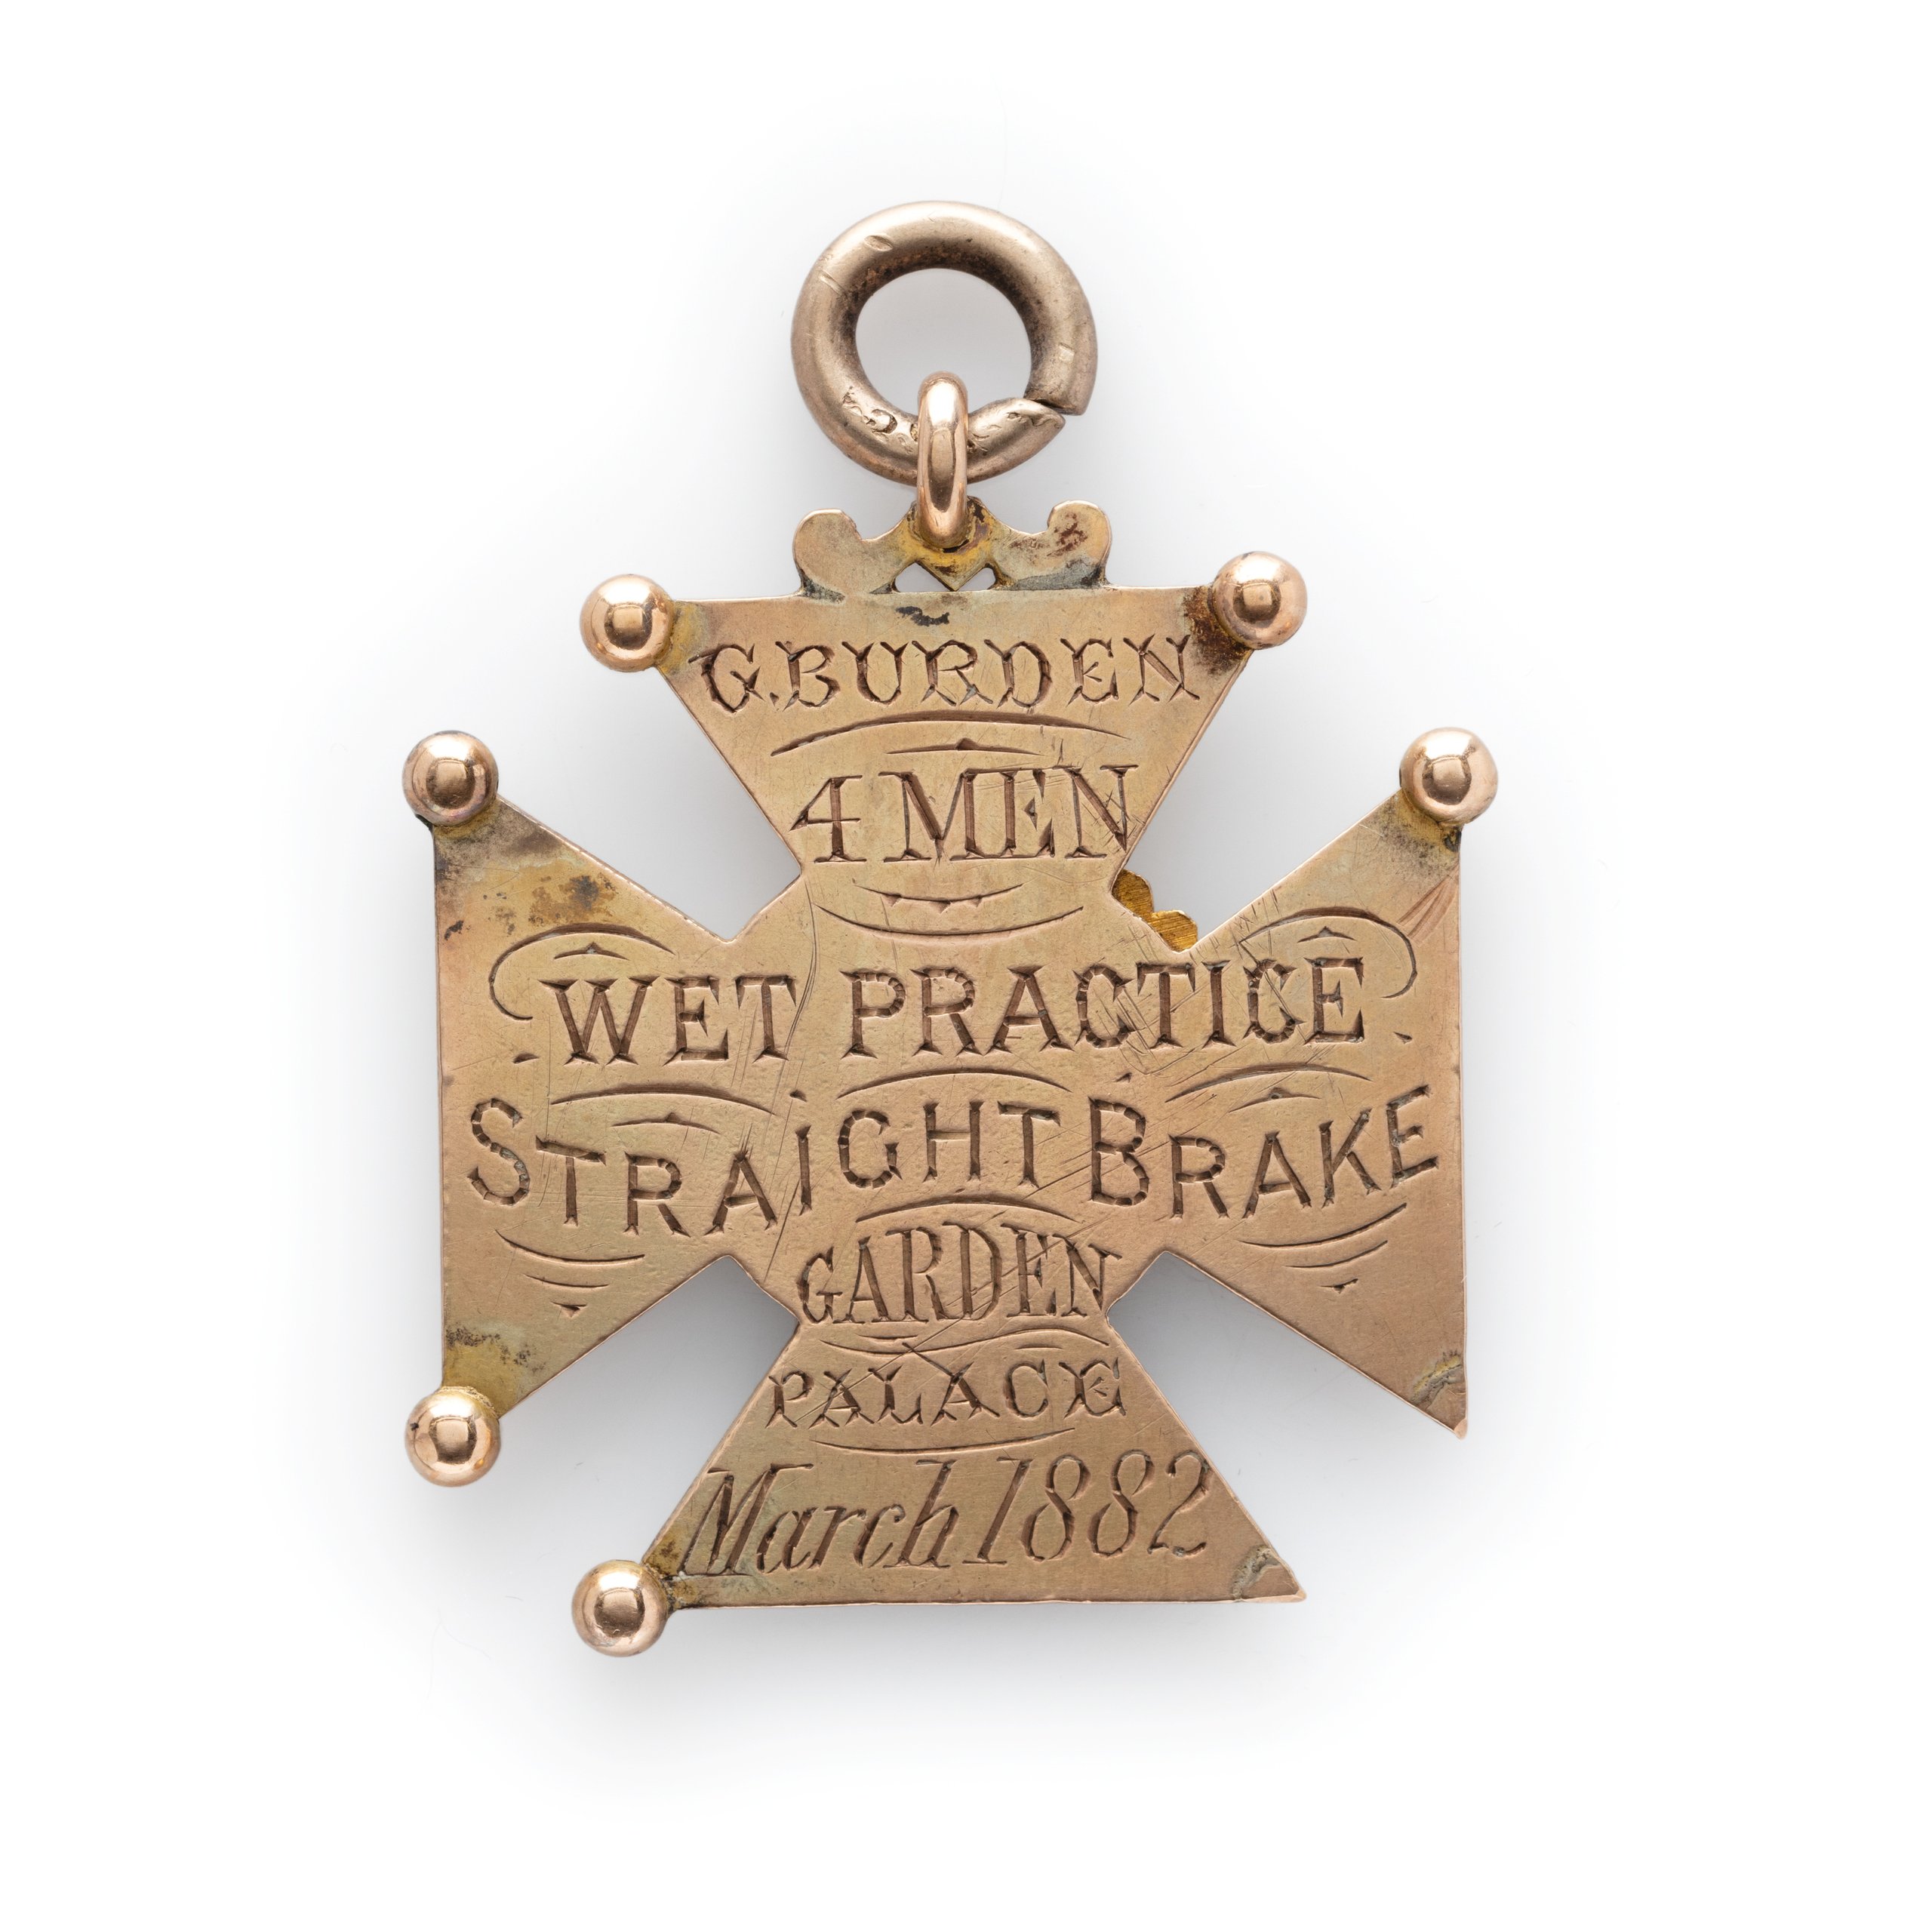 Fire Brigade medal